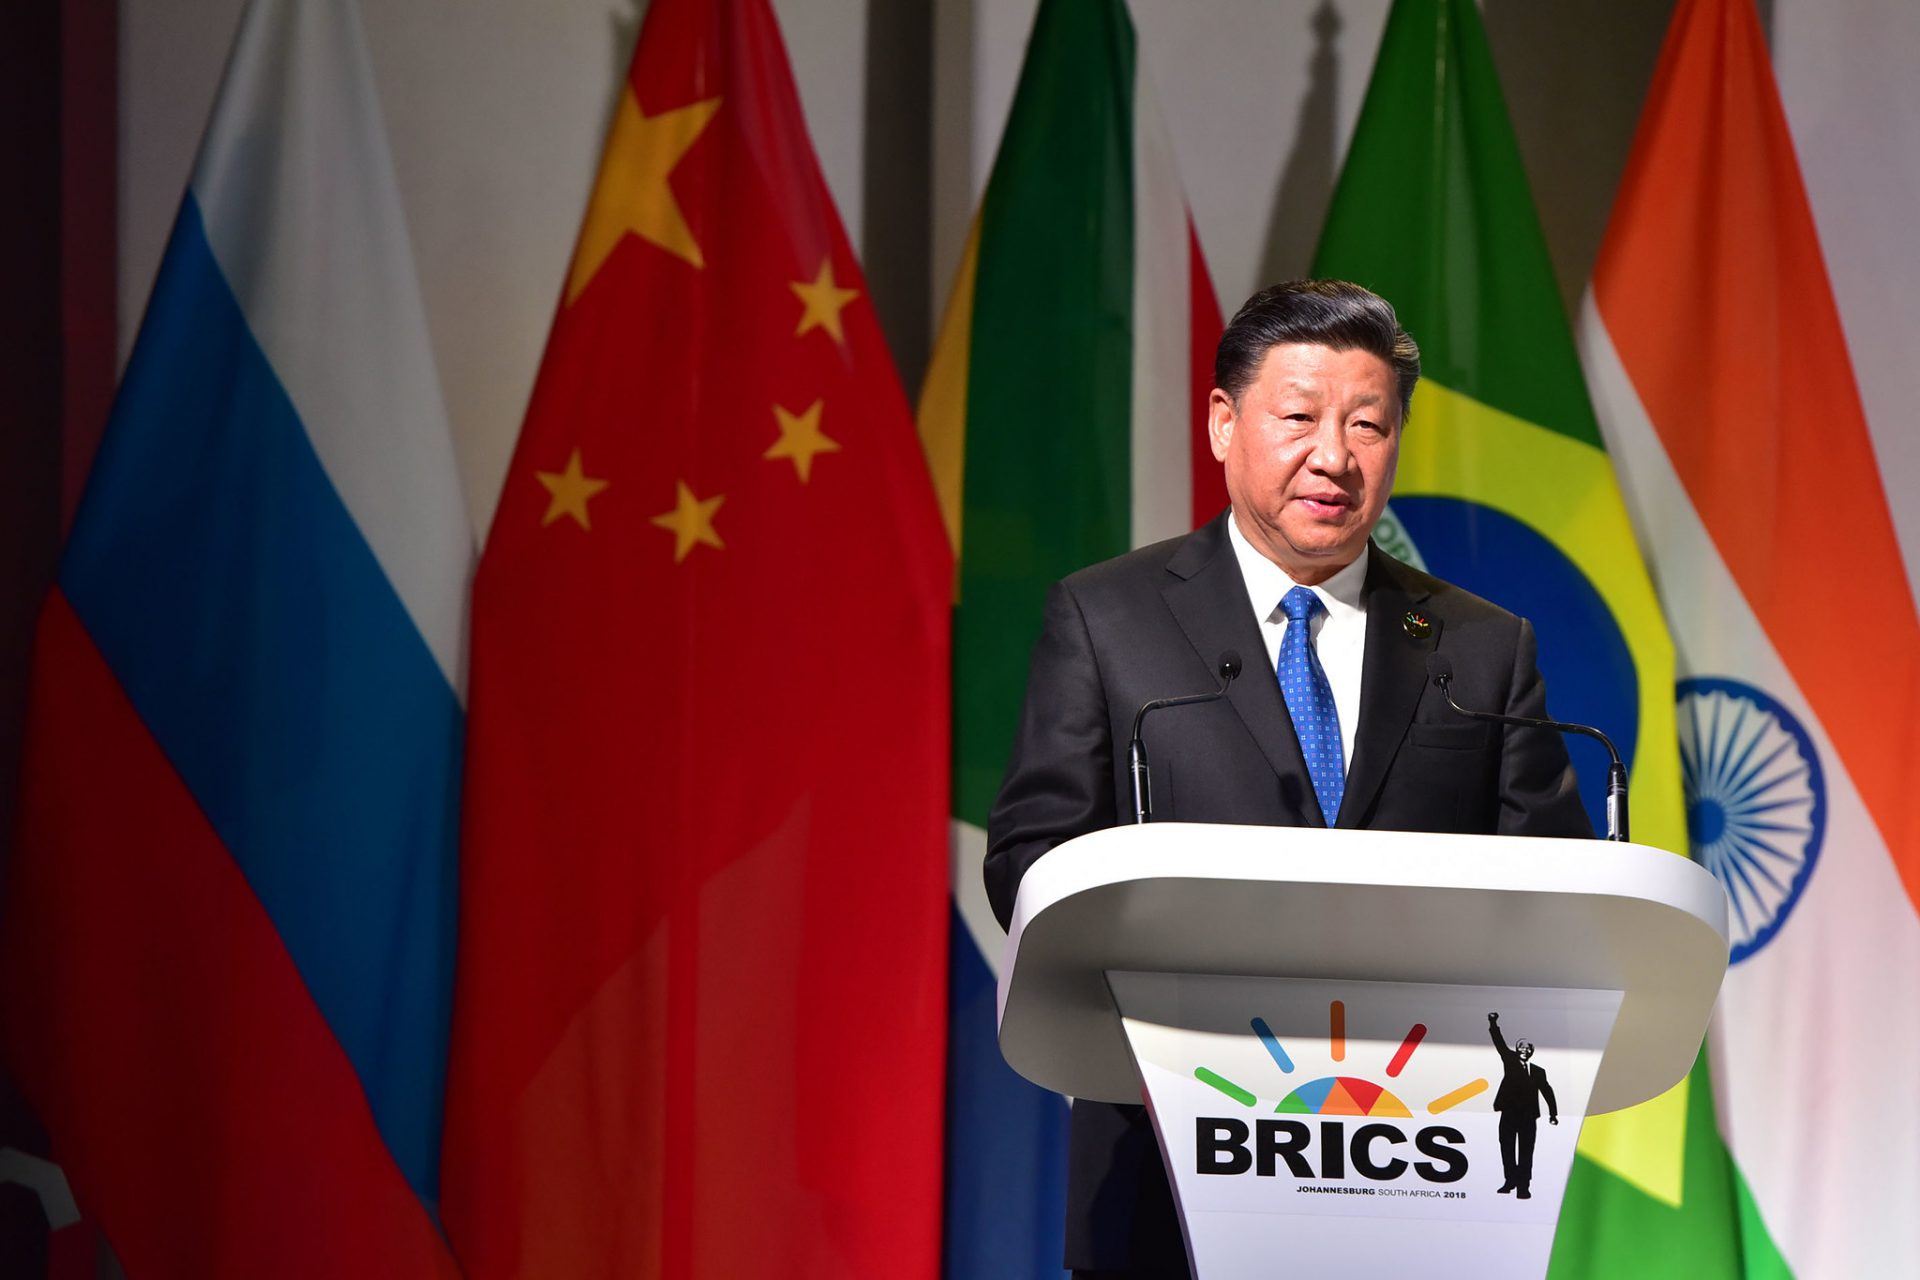 آفریقای جنوبی می گوید با چین در زمینه توسعه همسو است